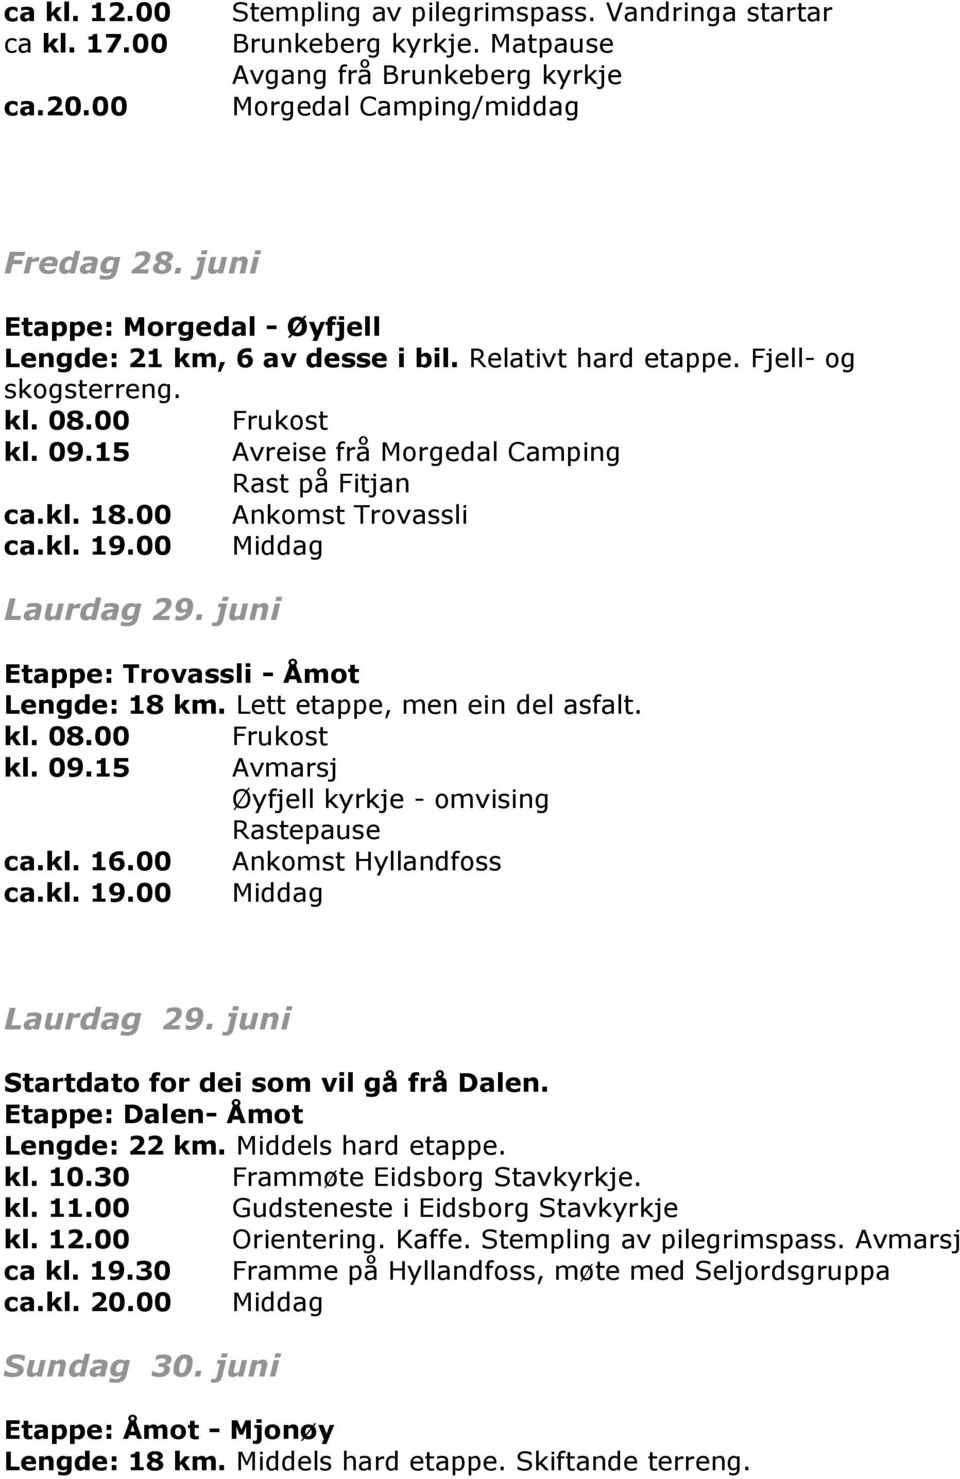 kl. 19.00 Middag Laurdag 29. juni Etappe: Trovassli - Åmot Lengde: 18 km. Lett etappe, men ein del asfalt. kl. 09.15 Avmarsj Øyfjell kyrkje - omvising Rastepause ca.kl. 16.00 Ankomst Hyllandfoss ca.